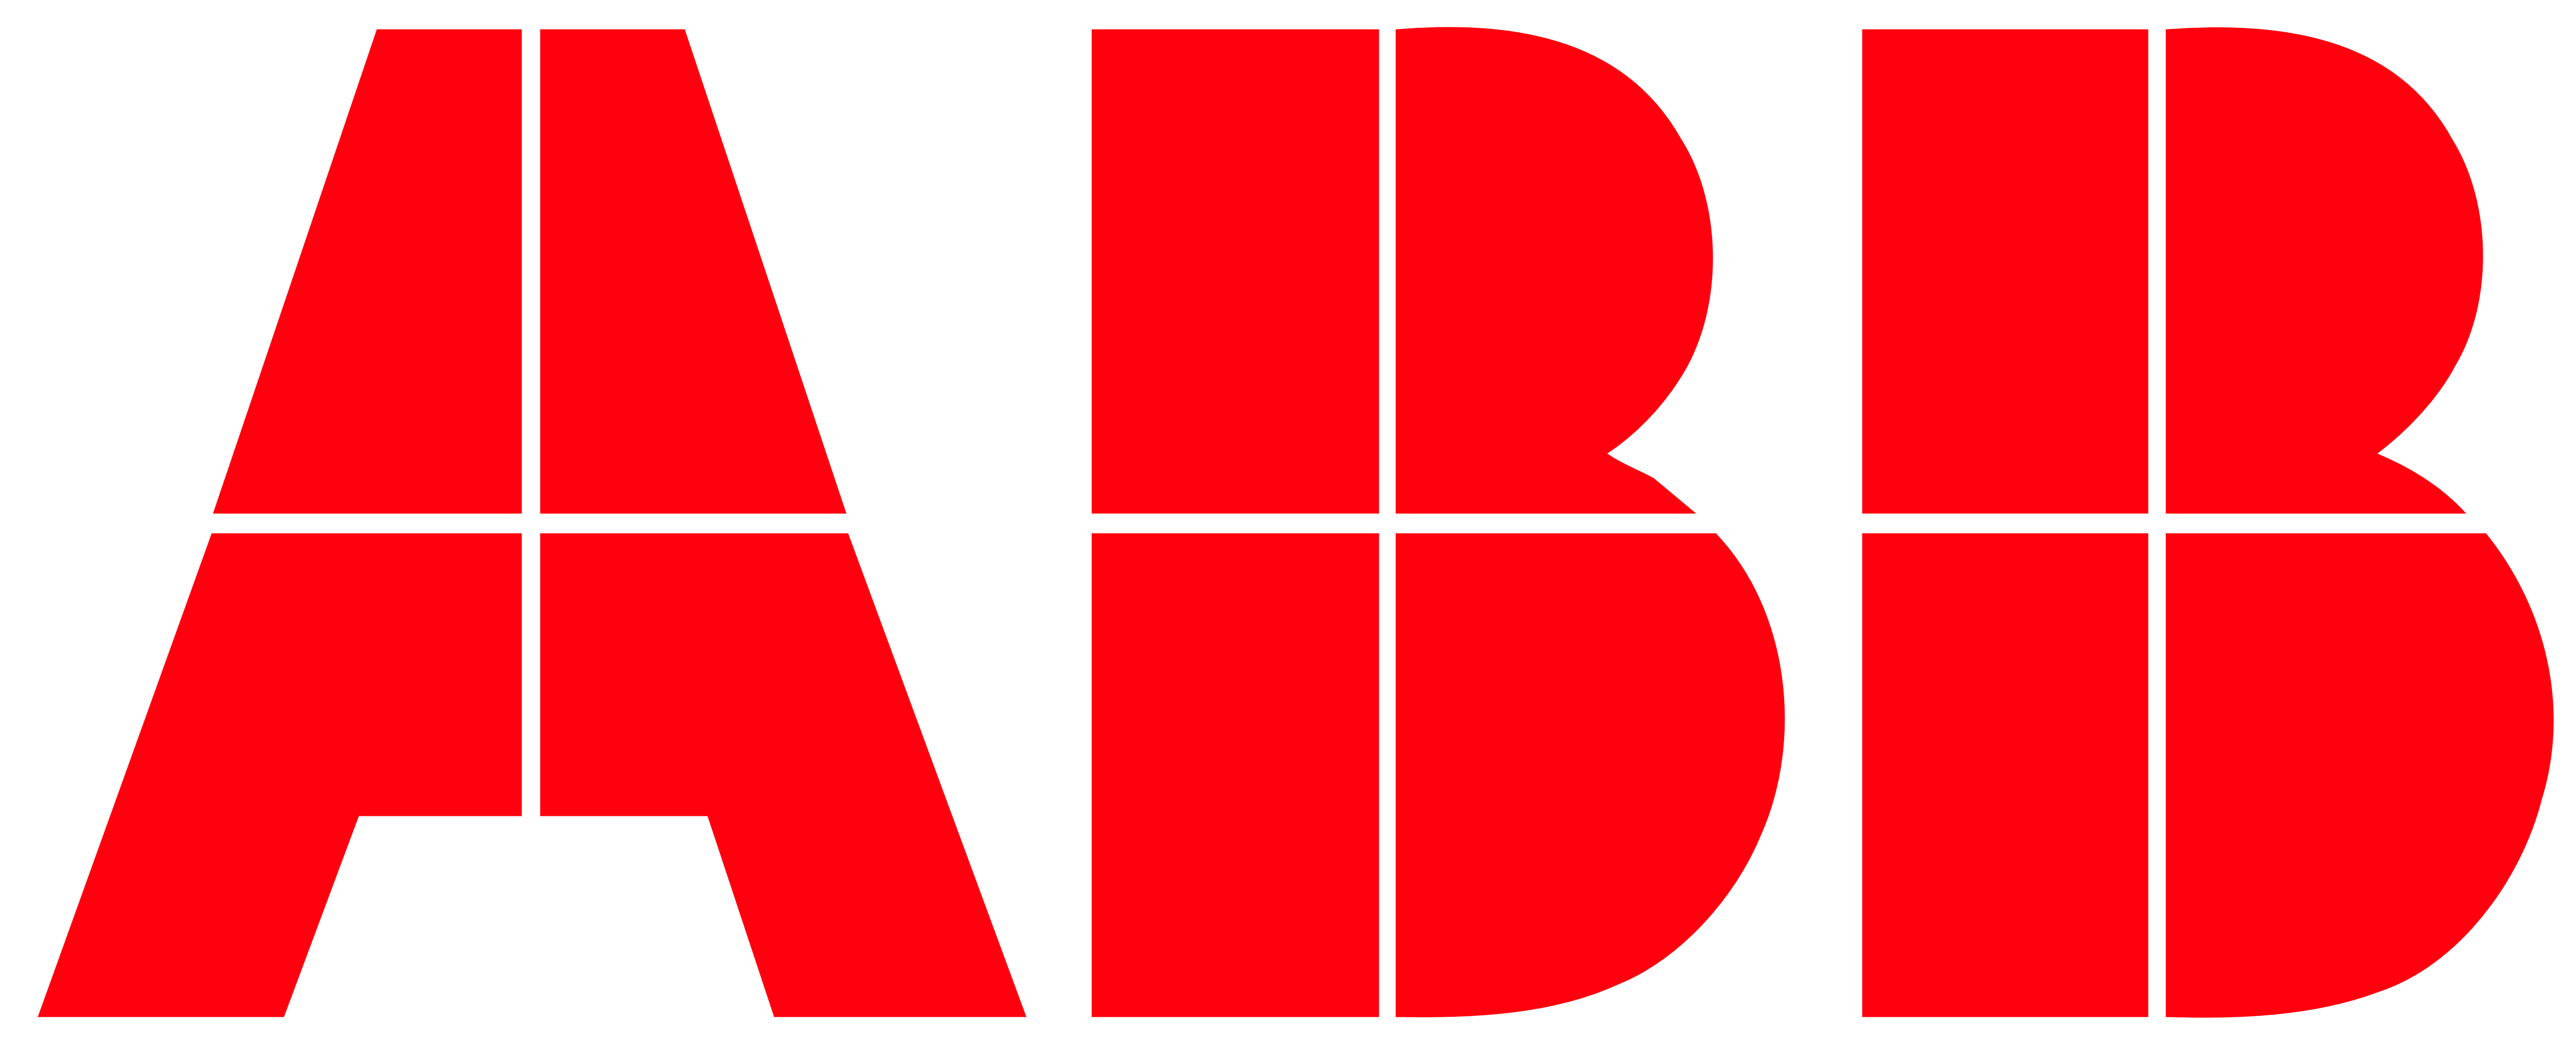 ABB materiale elettrico in Calabria con consegna a domicilio